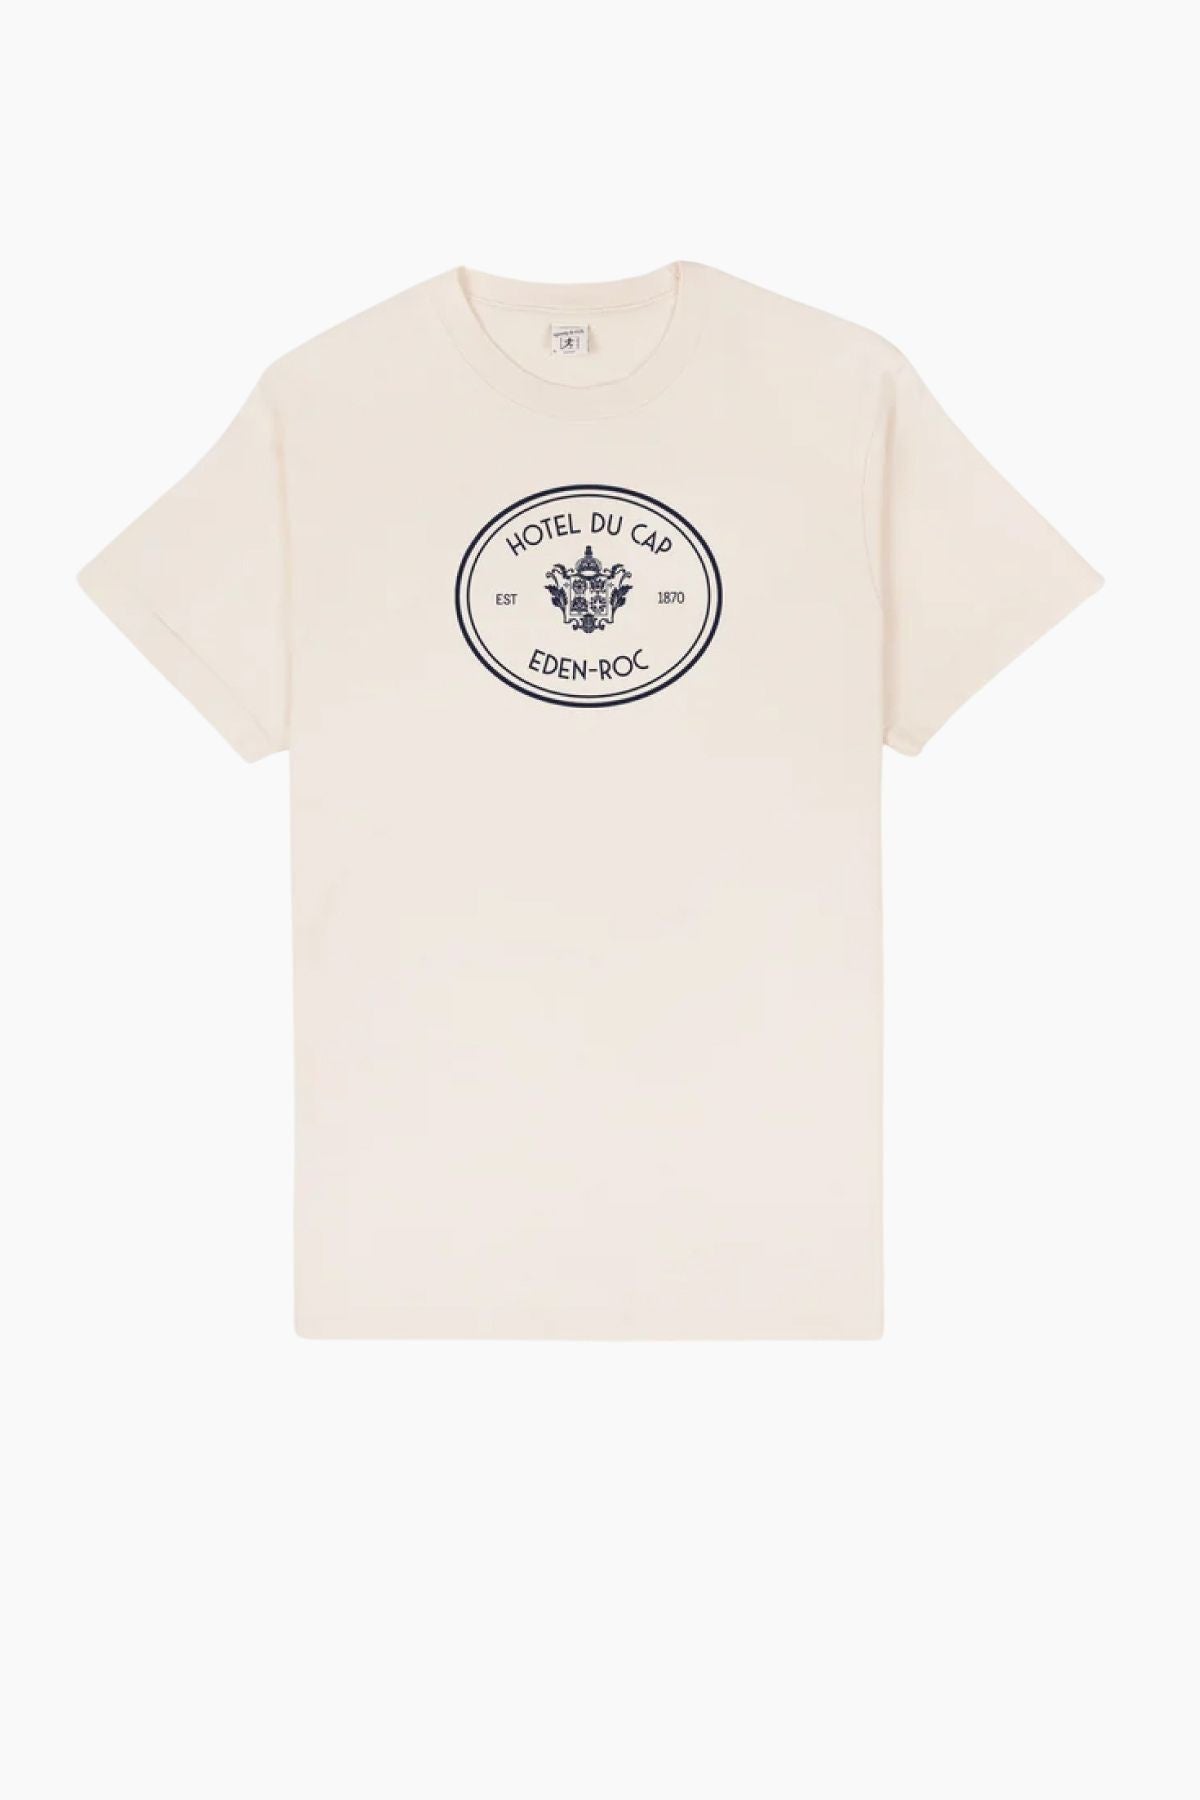 Sporty & Rich Eden Crest Kennedy T-Shirt - Cream/ Navy